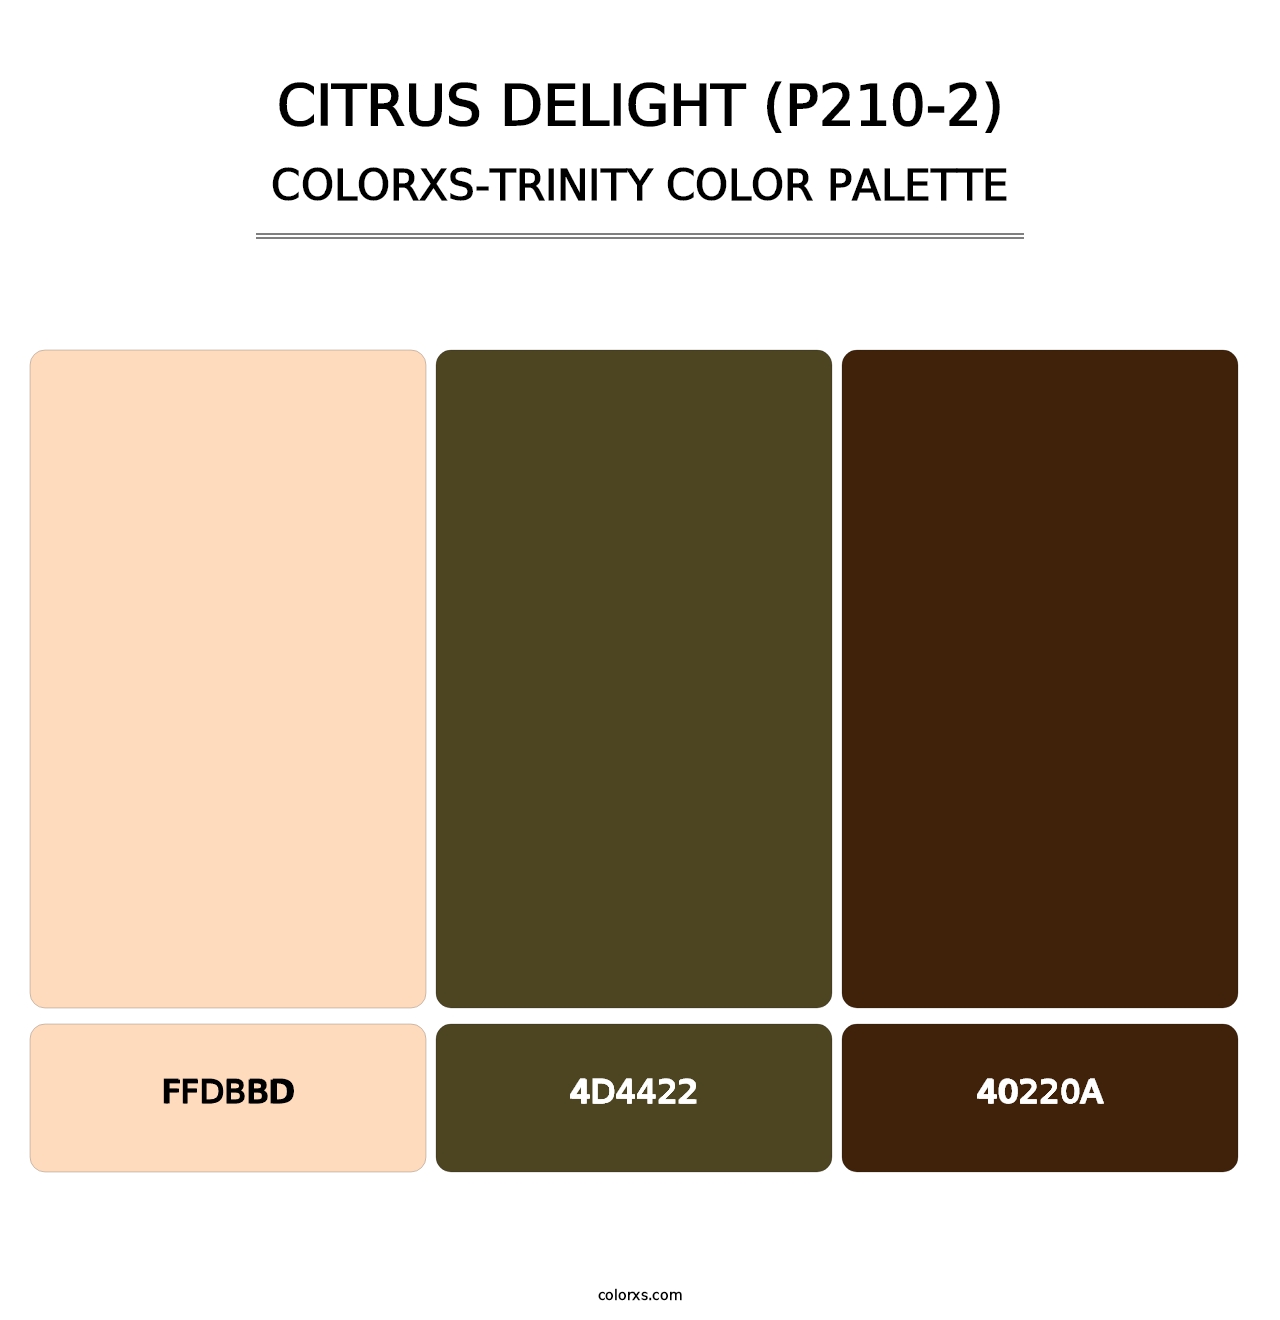 Citrus Delight (P210-2) - Colorxs Trinity Palette